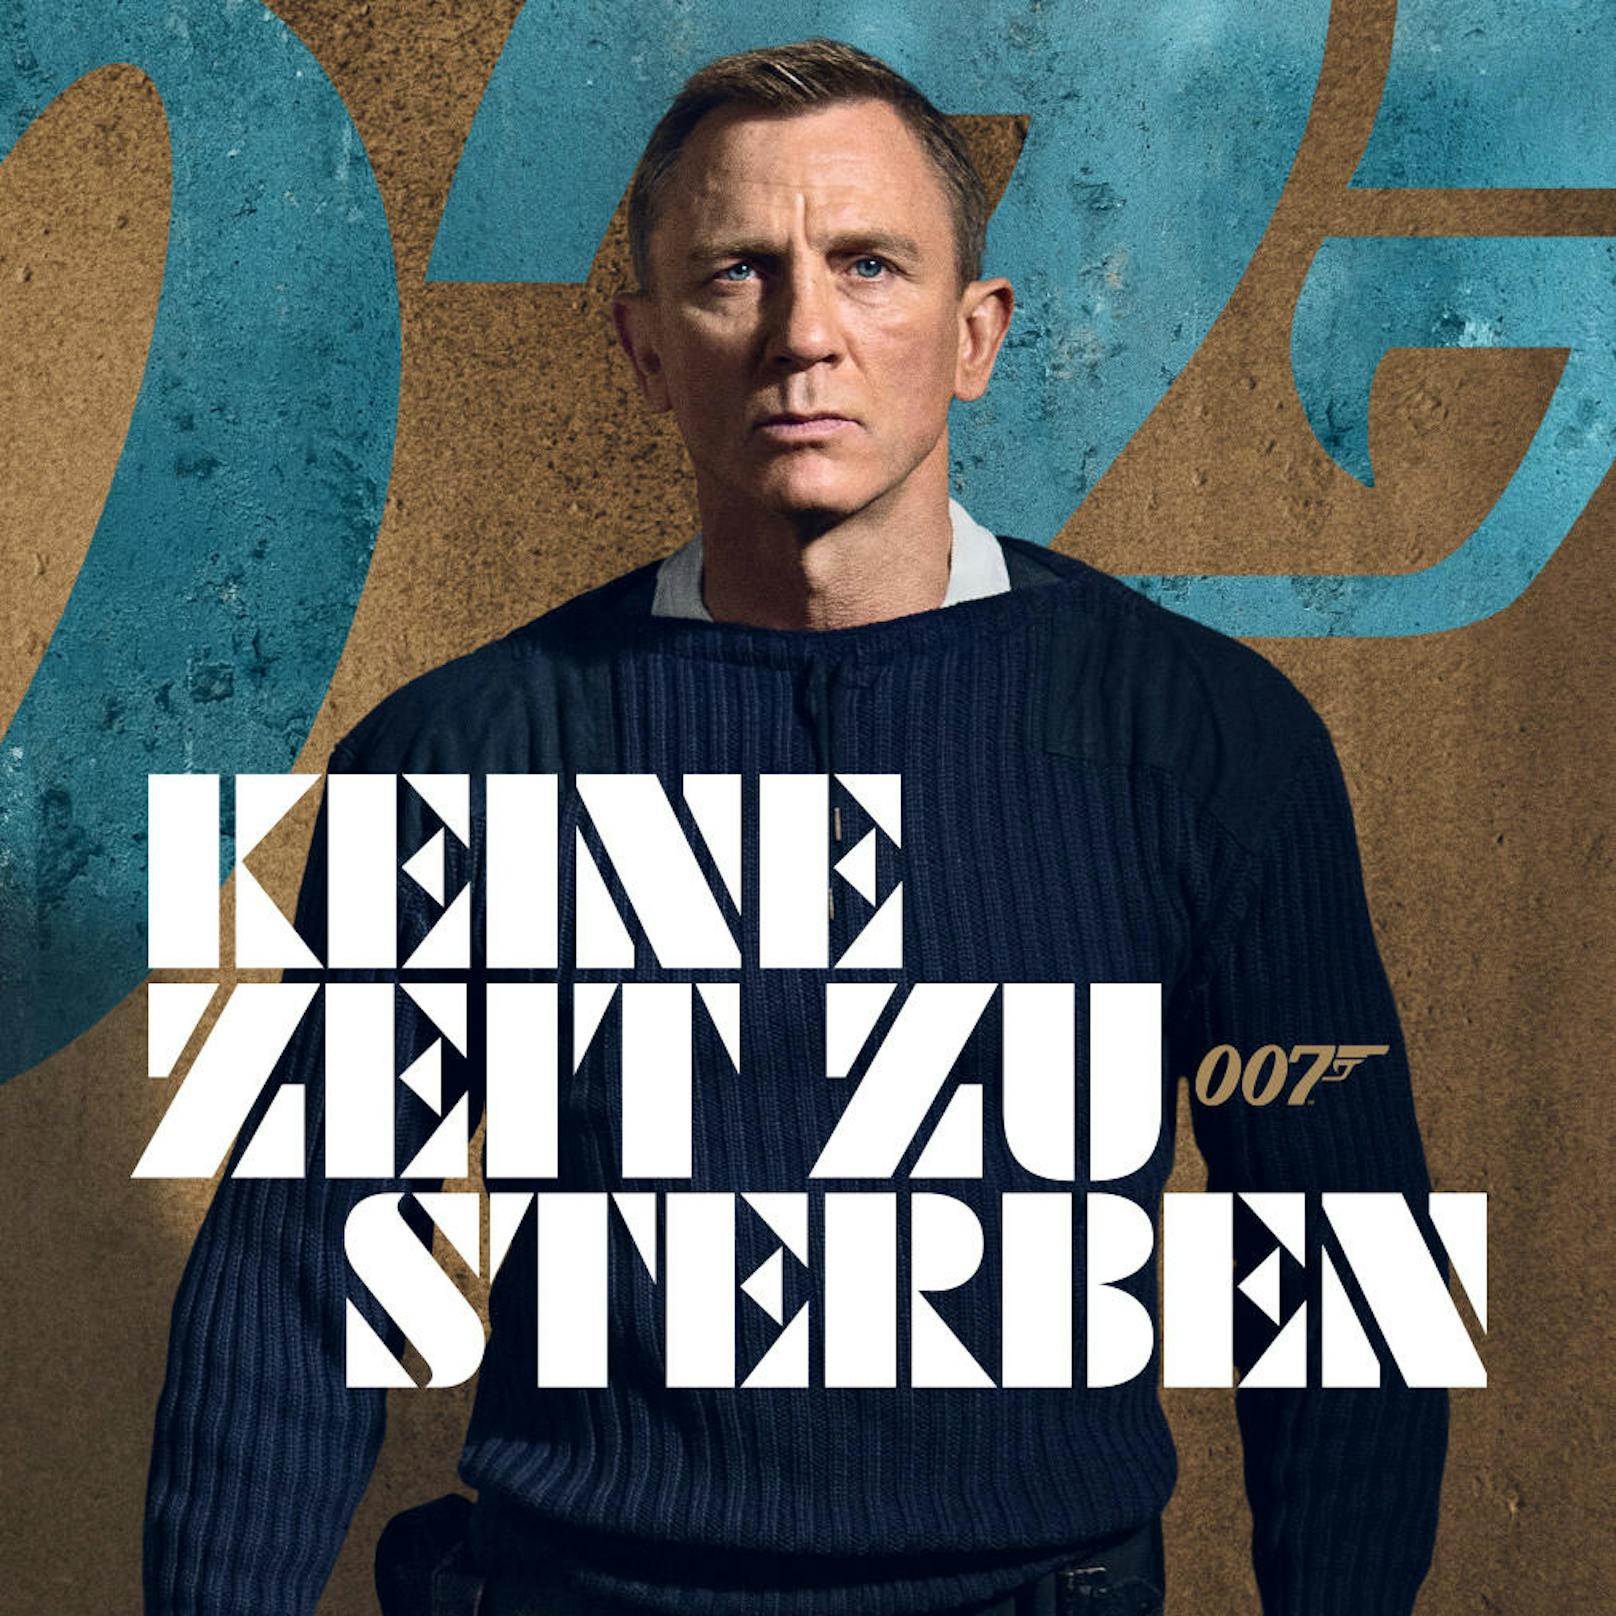 <b>KEINE ZEIT ZU STERBEN </b><strong>(April 2021):</strong> Das letzte 007-Abenteuer mit <strong>Daniel Craig</strong> steckt schon ziemlich lange in der Warteschleife. Ursprünglich für 2020 geplant, soll es nun endlich im Frühjahr 2021 in die Kinos kommen. <strong>&gt;&gt; <a href="https://www.youtube.com/watch?v=WjKN5qCx3jU">HIER</a> geht's zum Trailer &lt;&lt;</strong><br>